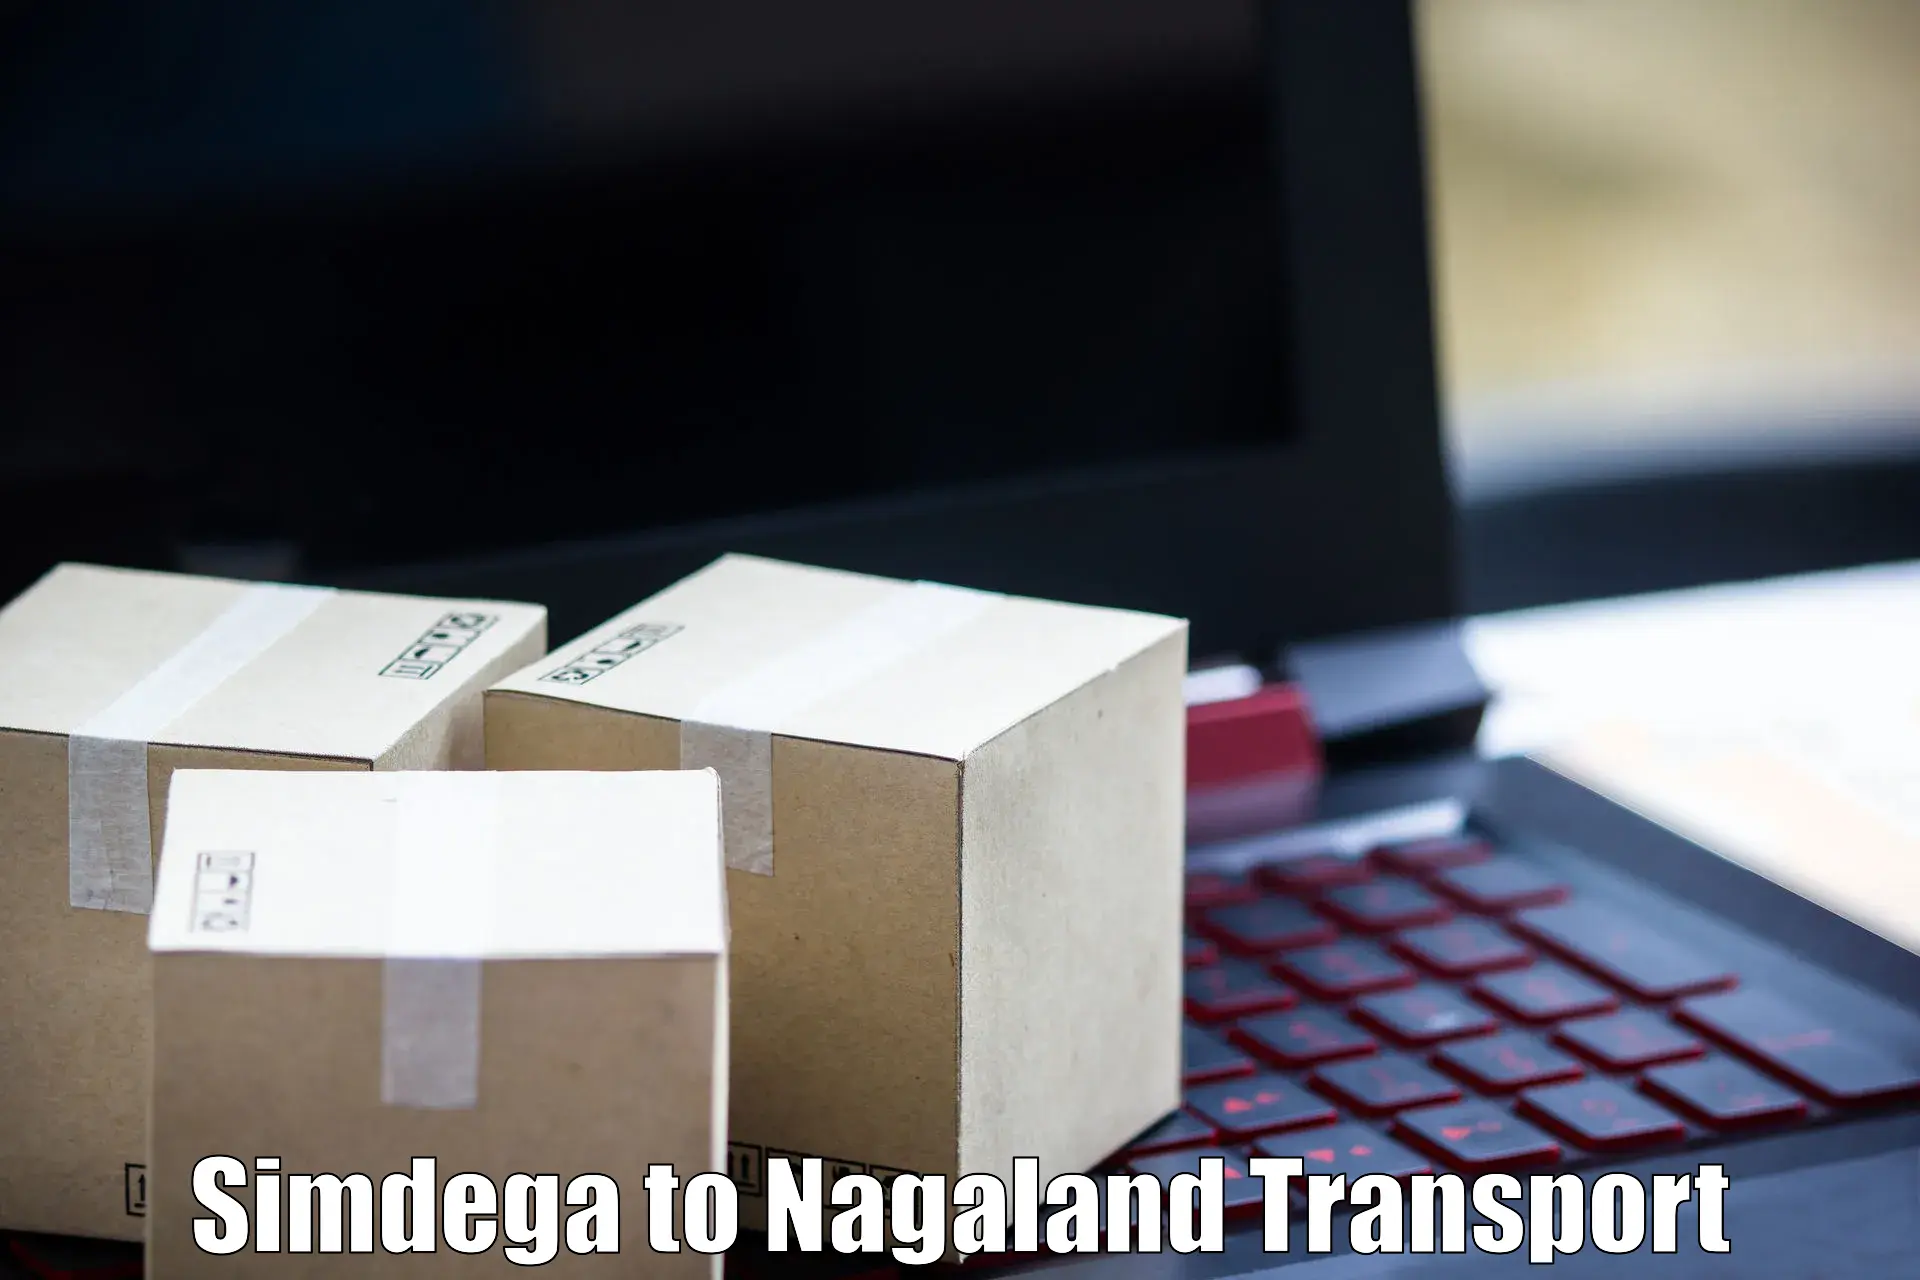 Cycle transportation service Simdega to NIT Nagaland